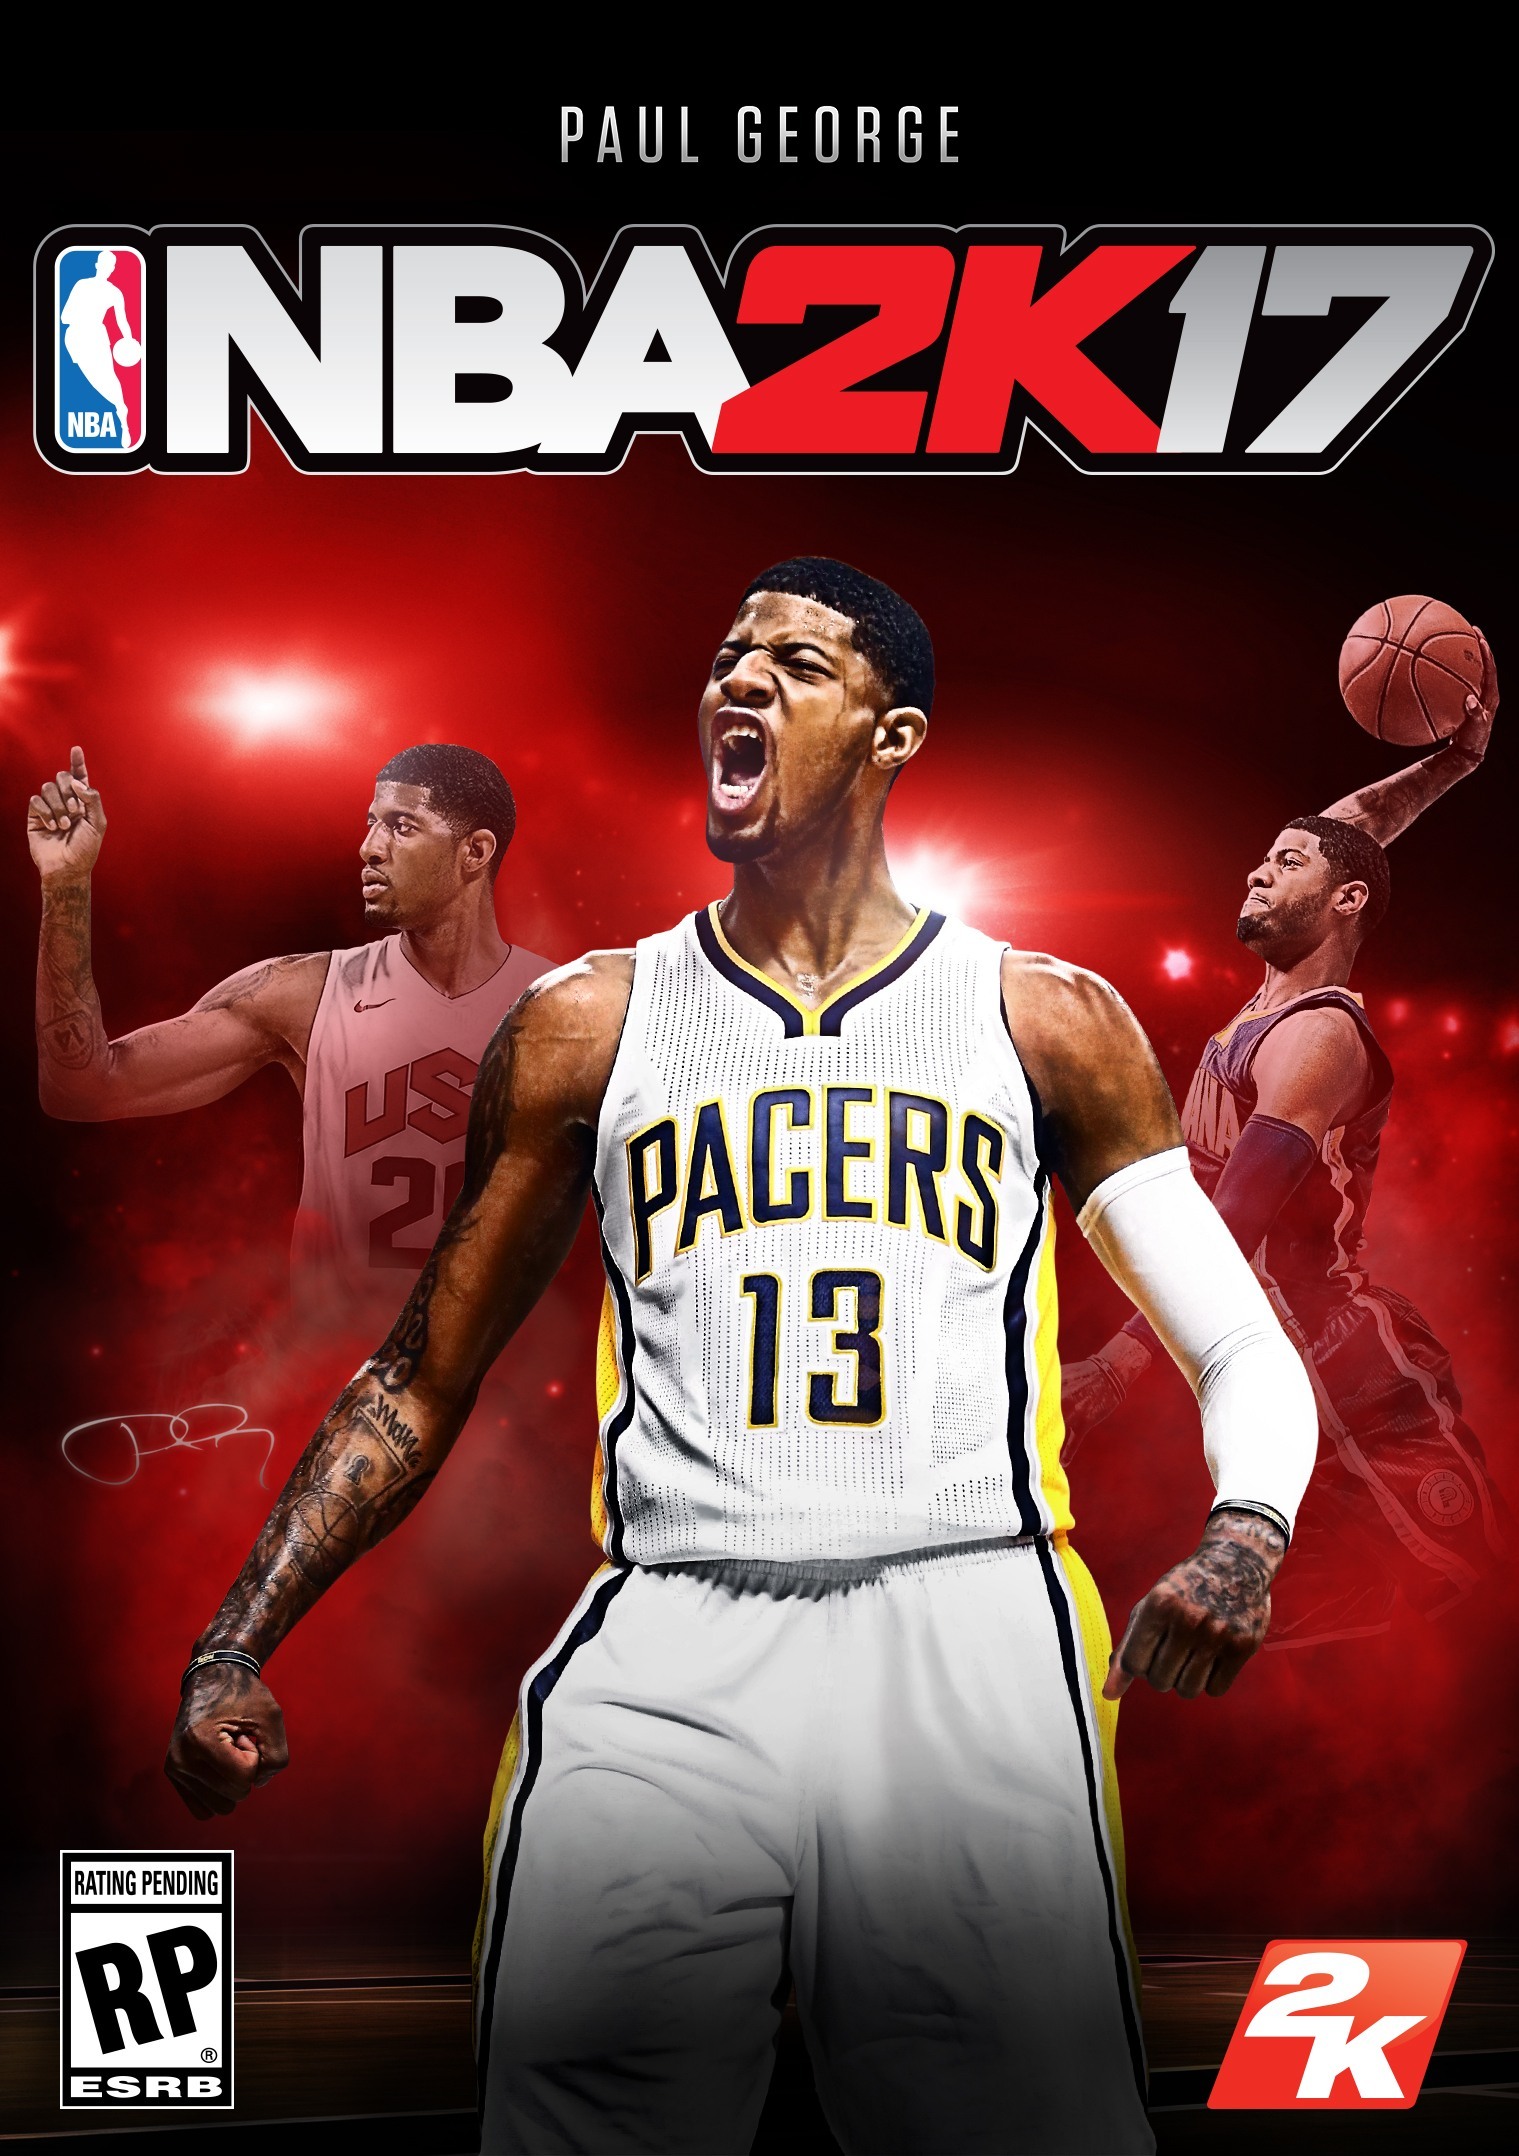 NBA 2K17 Paul George apparirà nella copertina del gioco